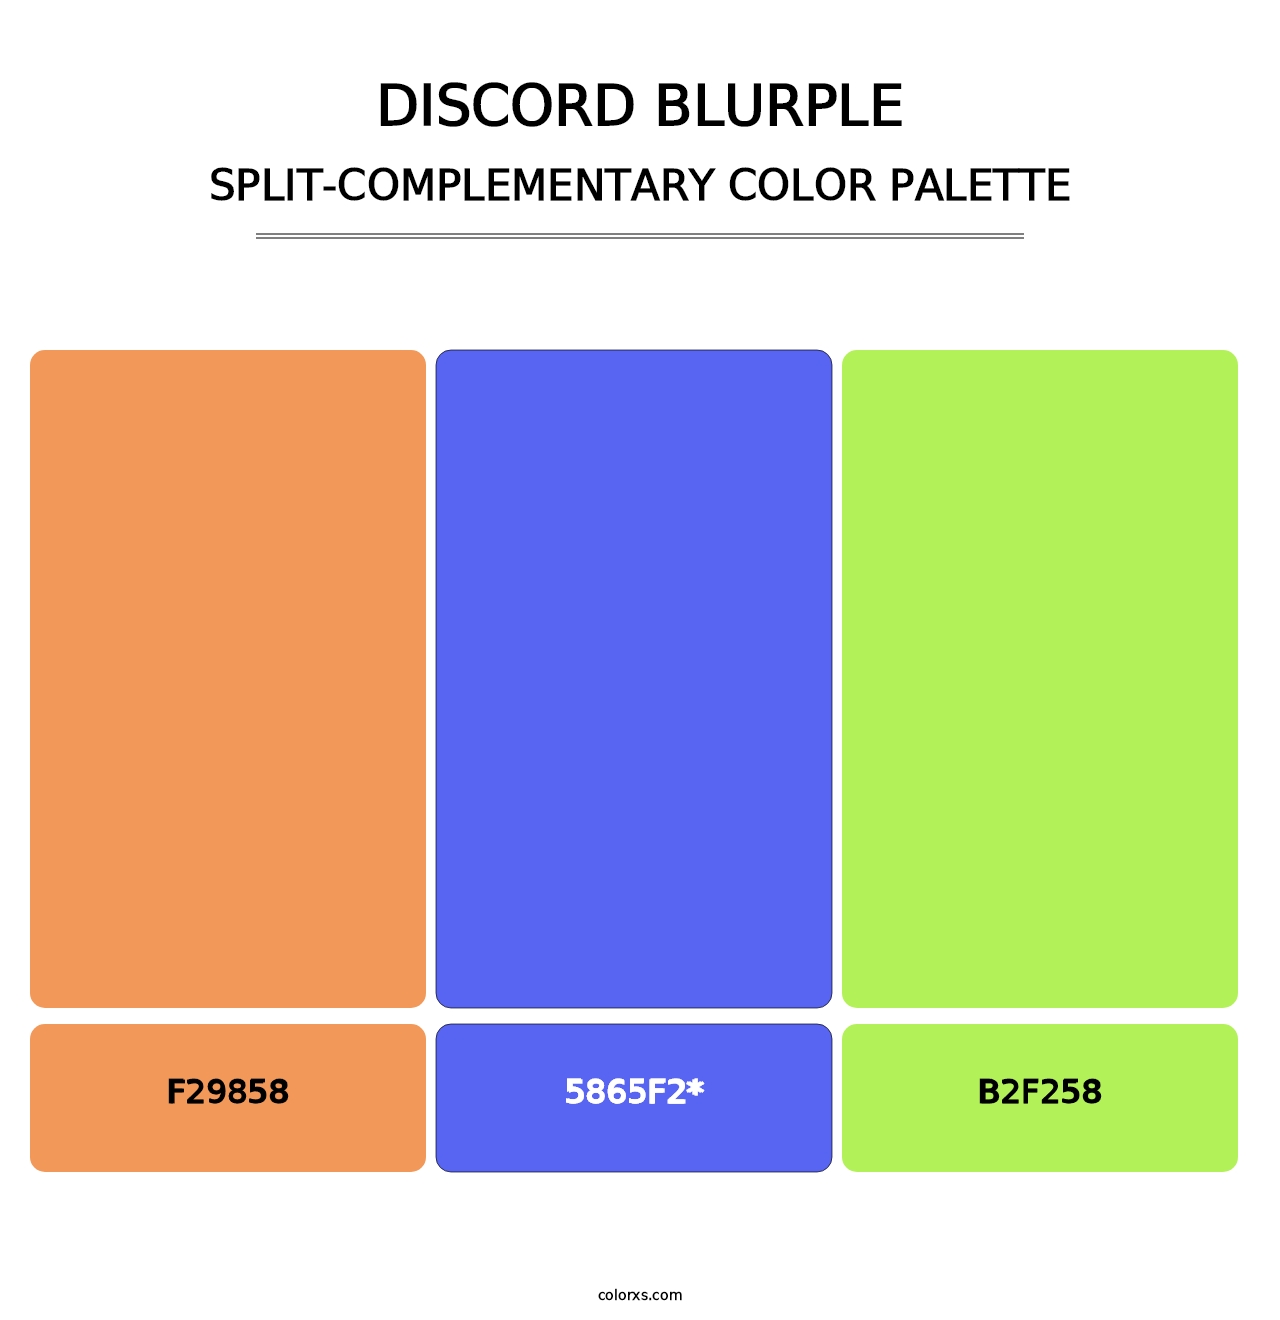 Discord Blurple - Split-Complementary Color Palette